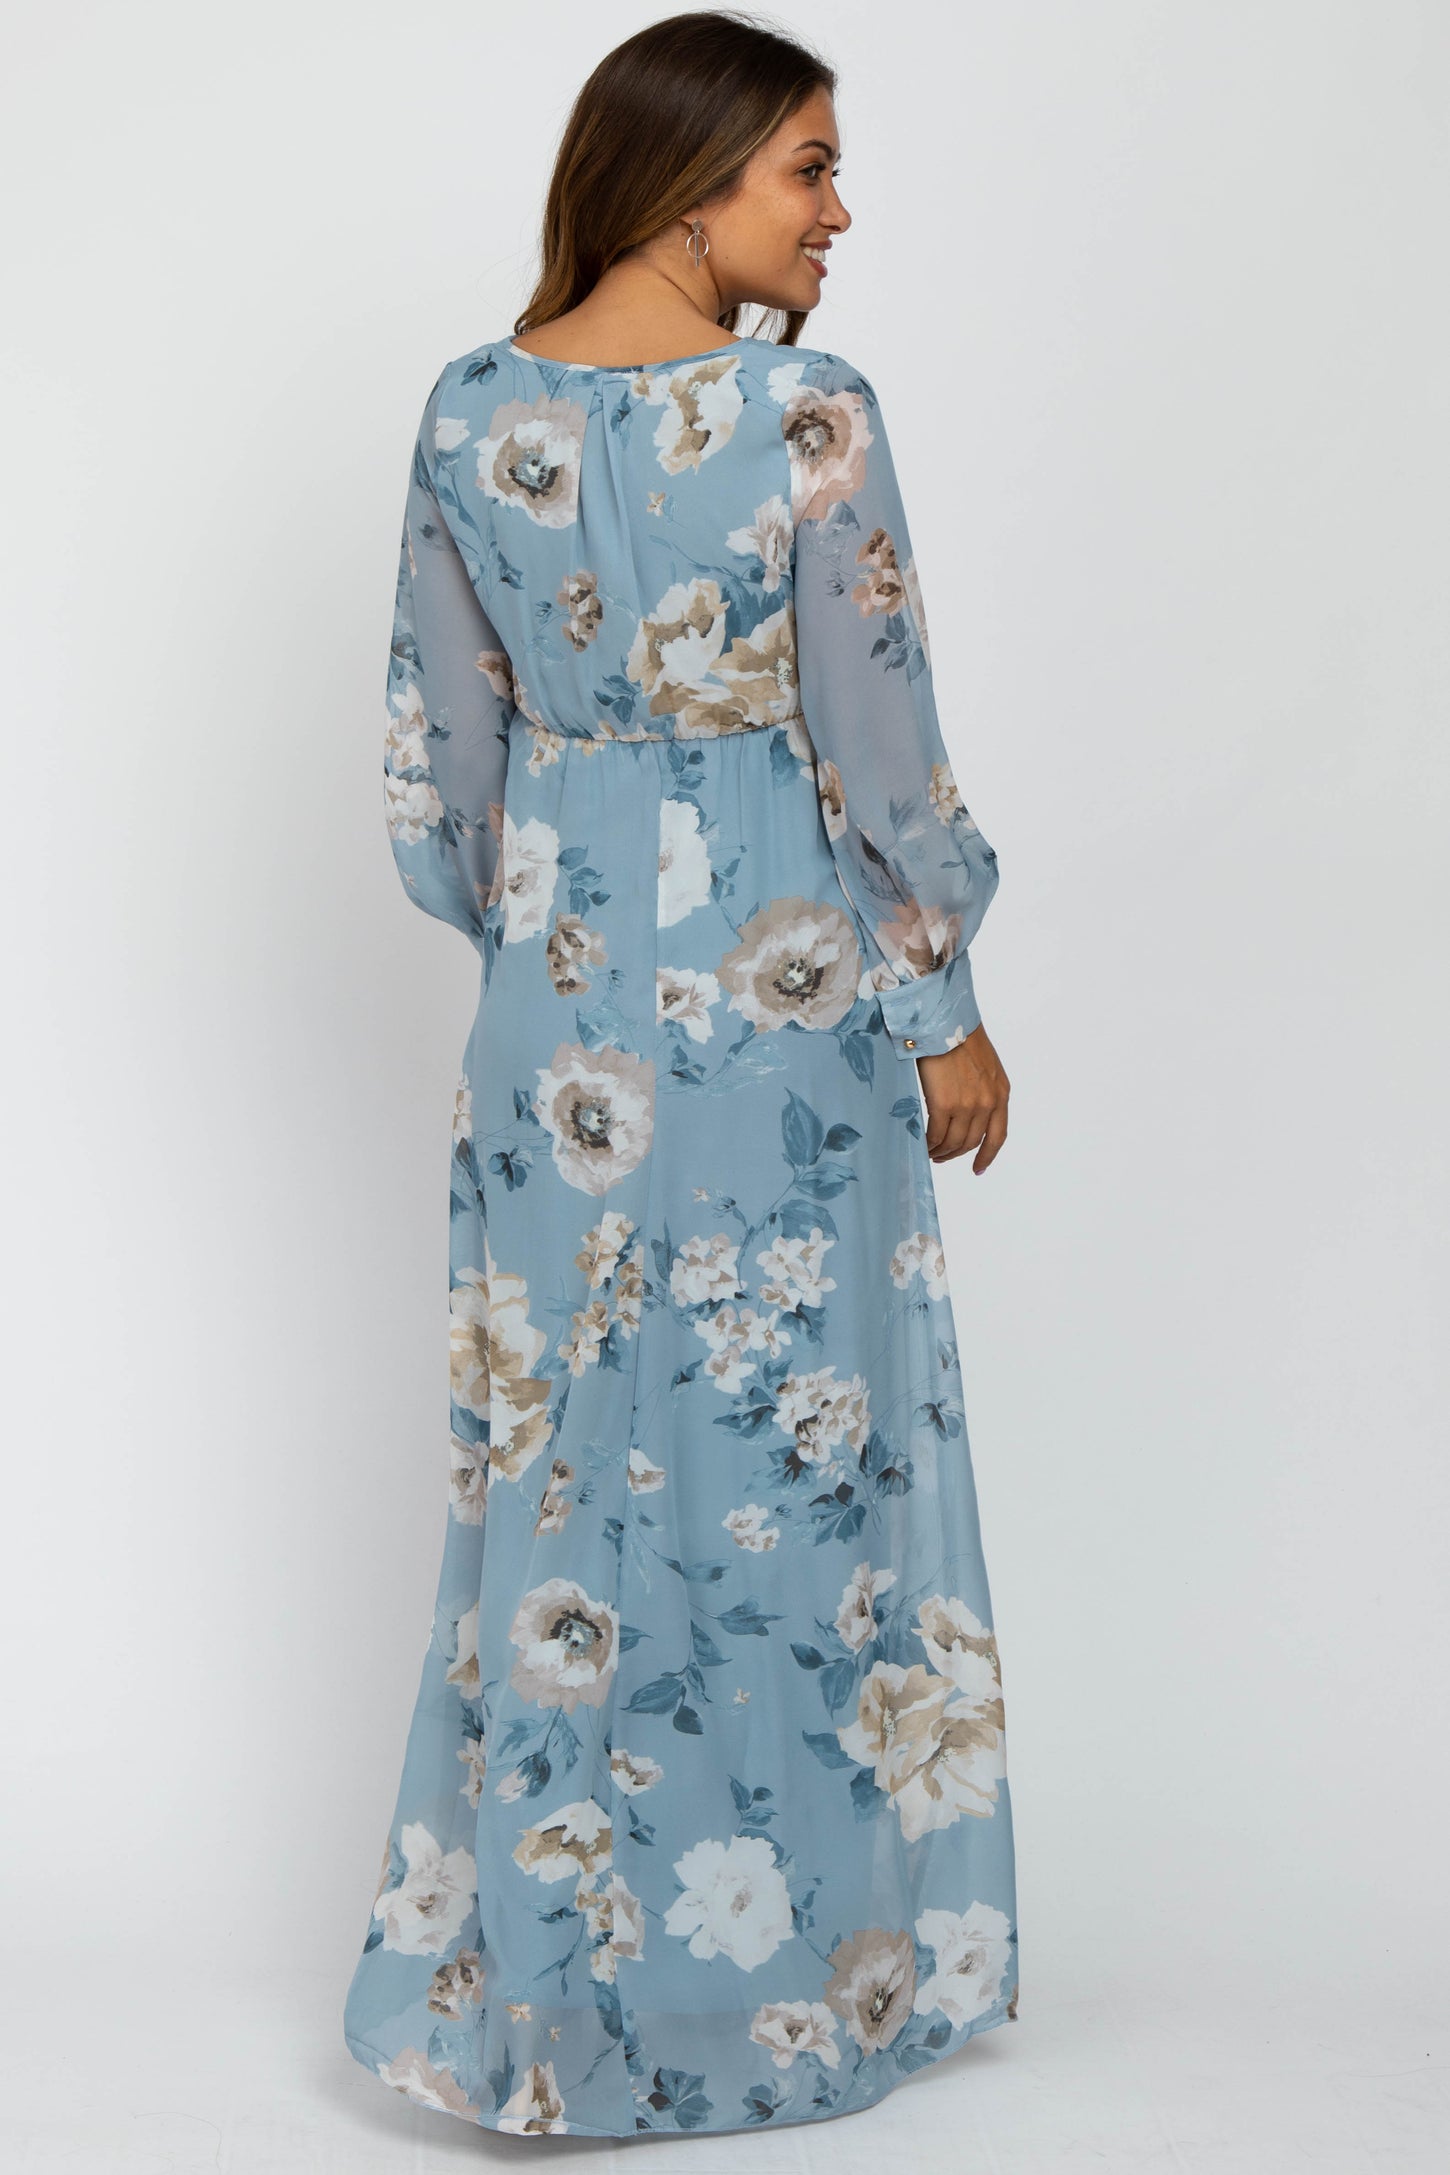 Light Blue Floral Chiffon Maternity Maxi Dress – PinkBlush